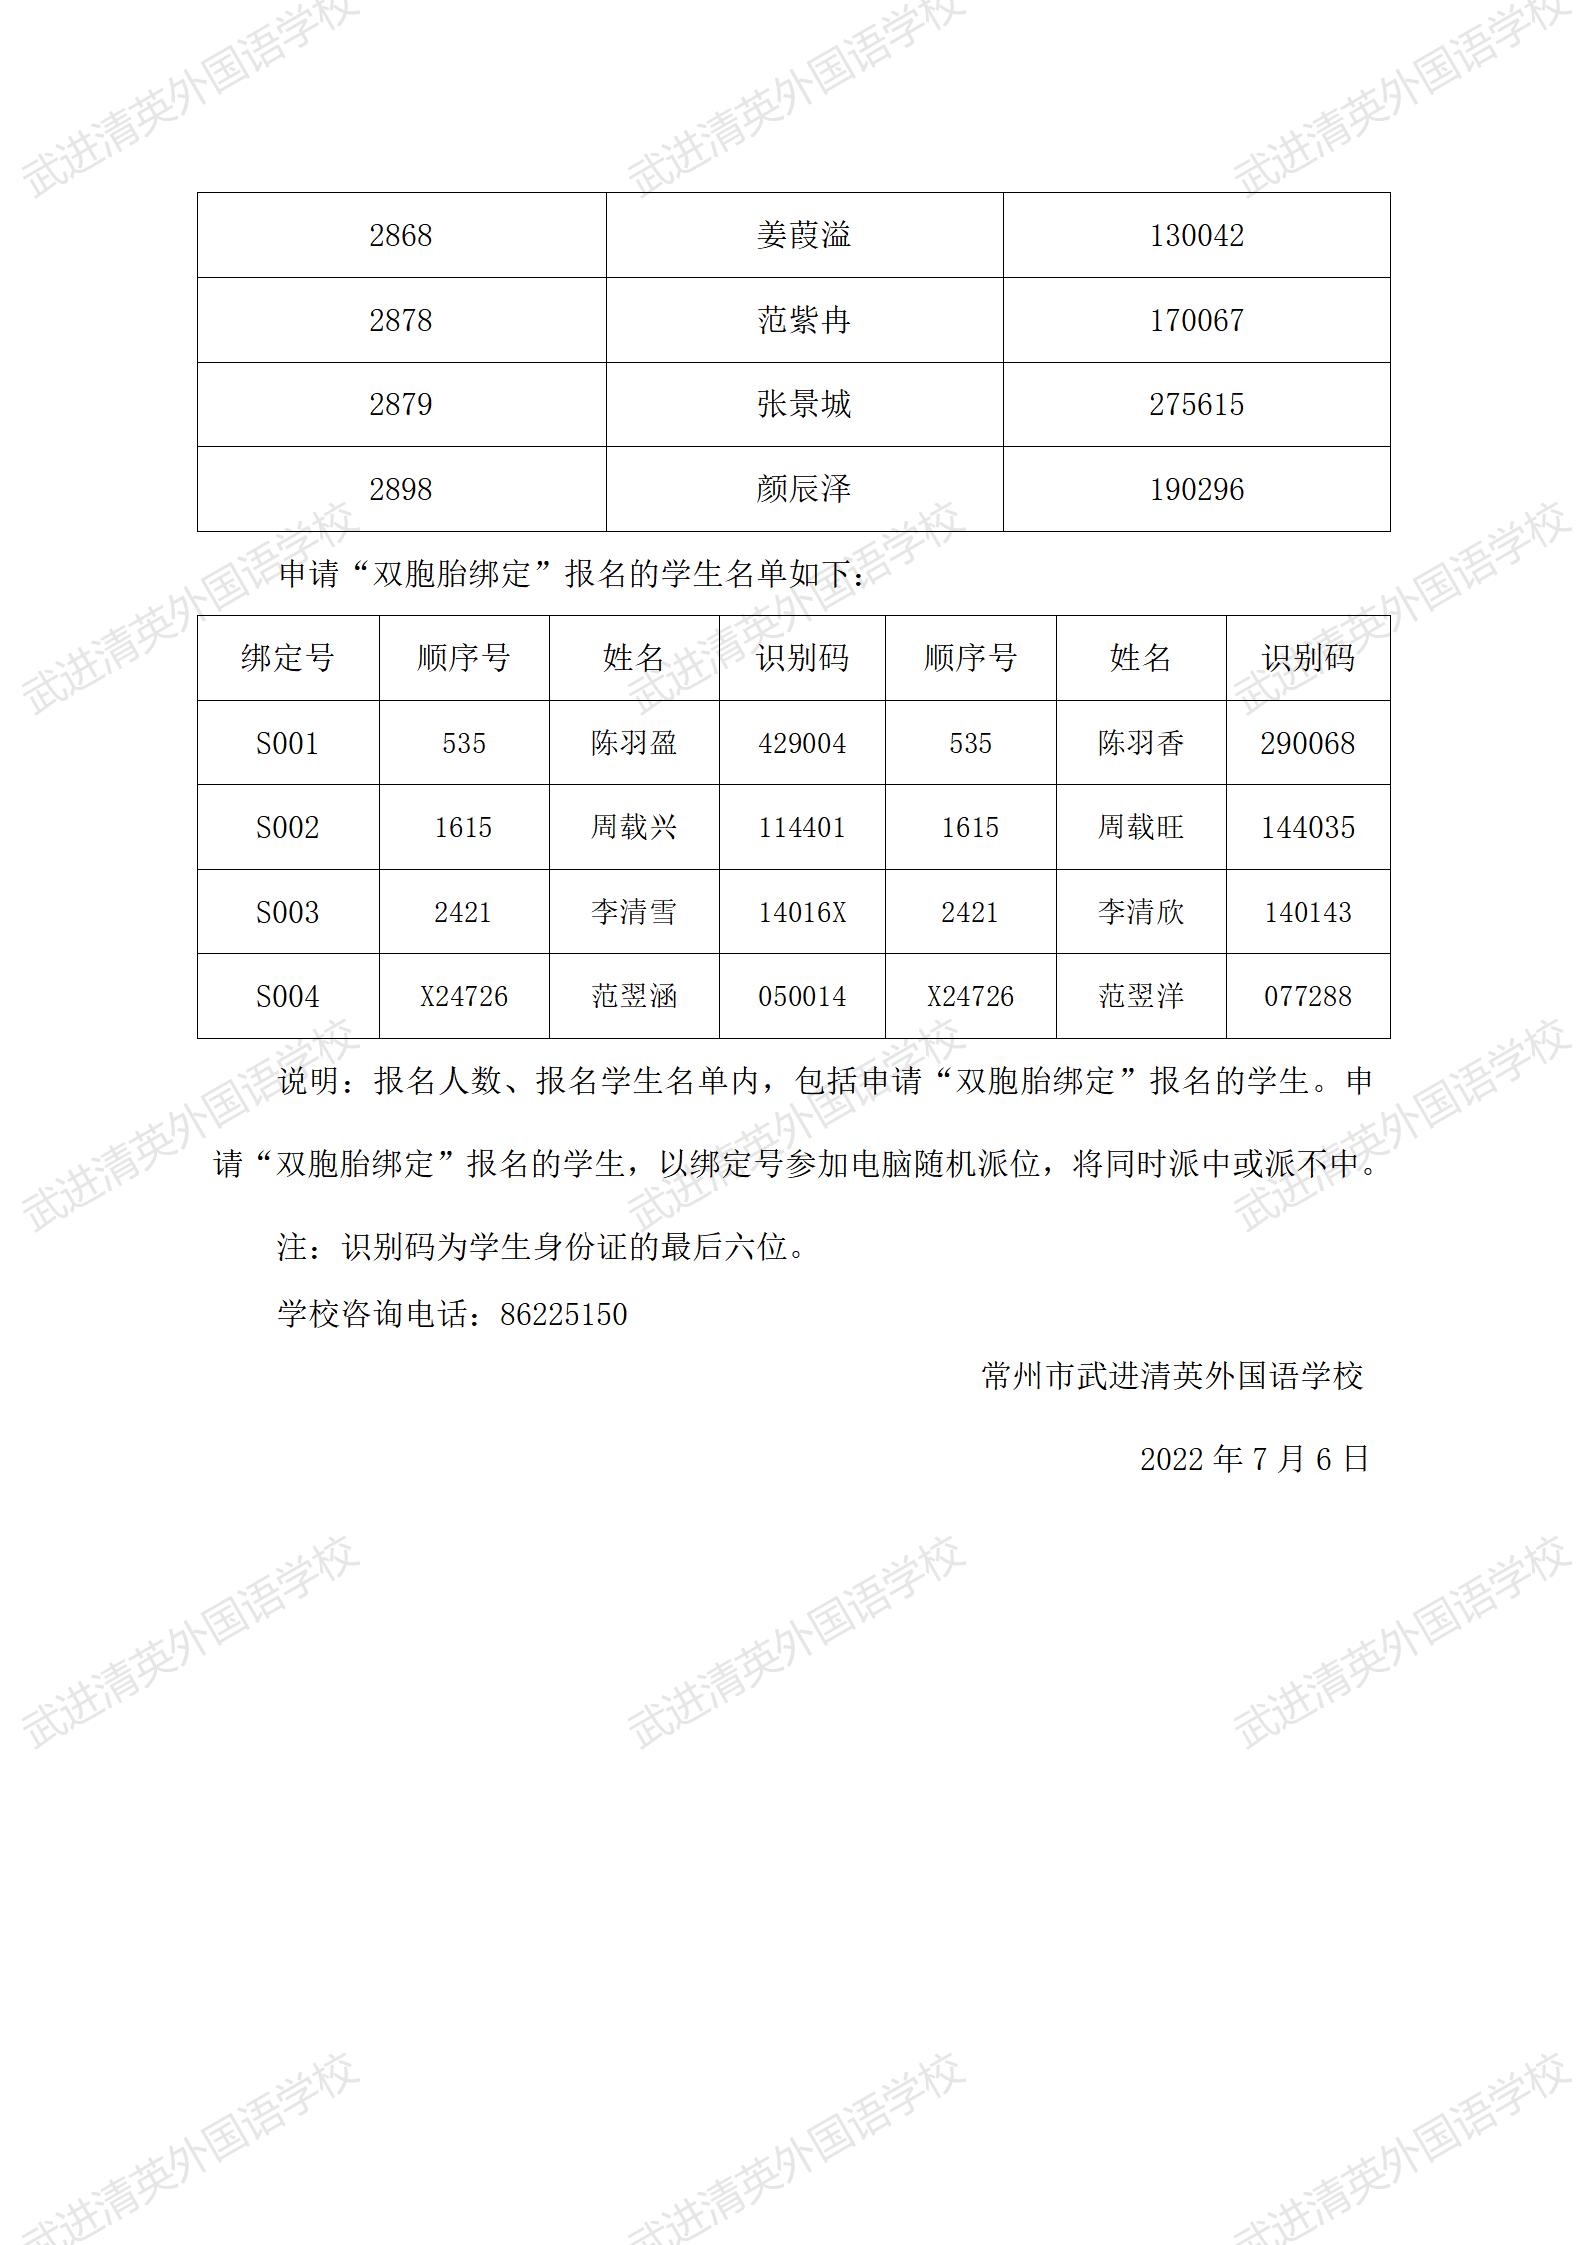 民办小学2022年秋学期新生报名学生名单公示6.4_23.jpg